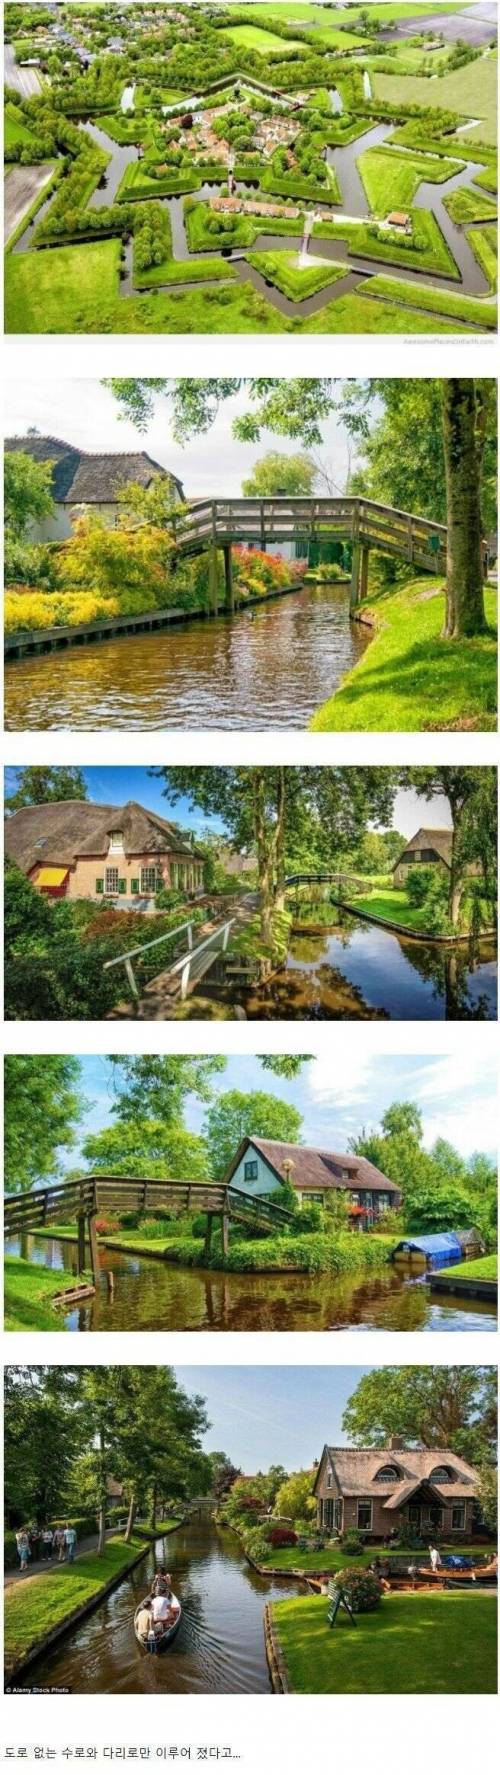 17 도로 없는 네덜란드의 마을.jpg